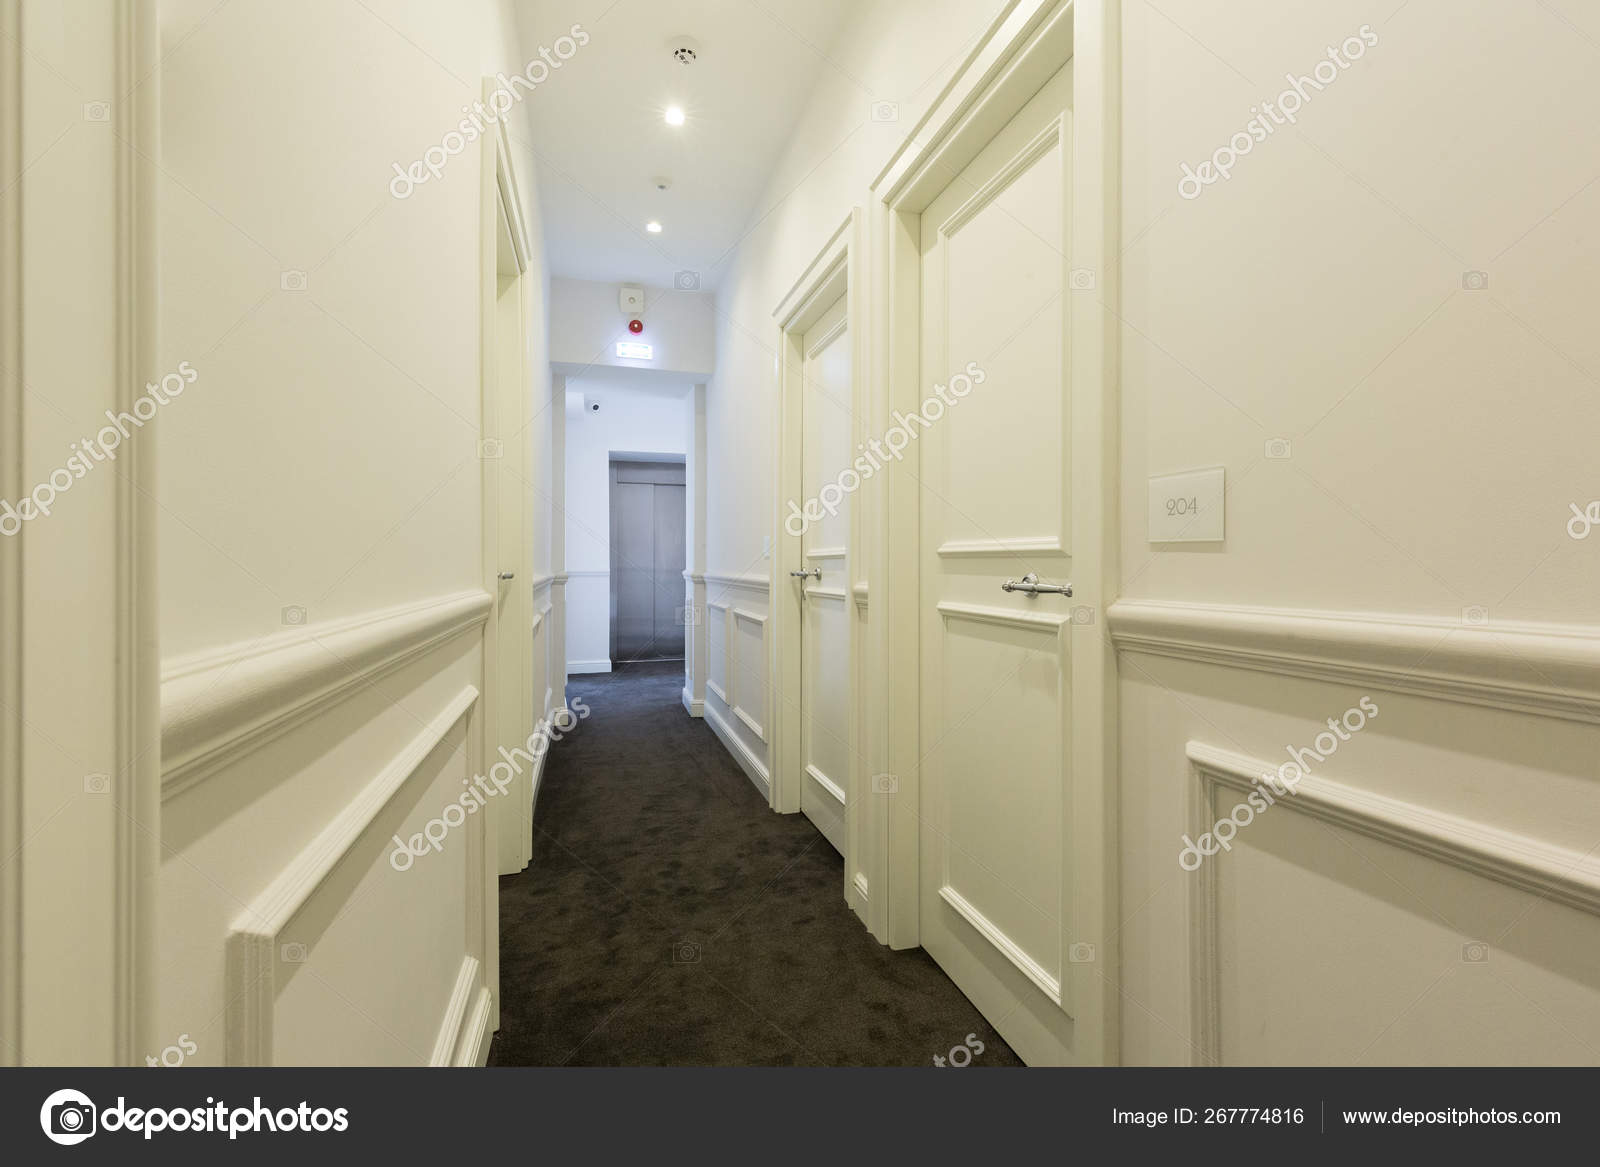 Hotel Interior Corridor Stock Photo C Rilueda 267774816